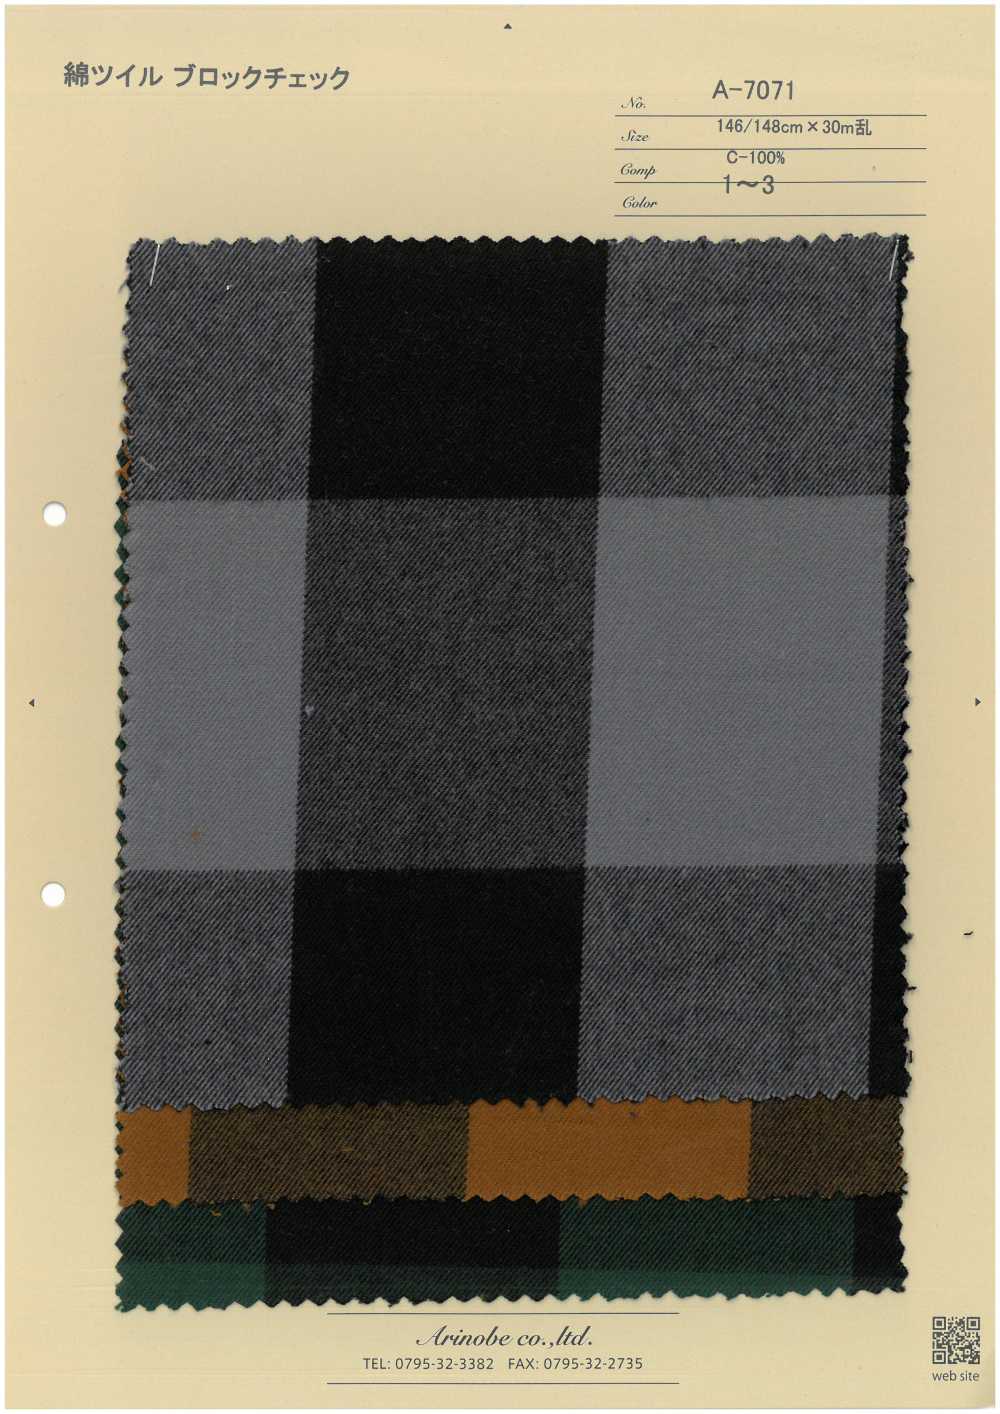 A-7071 Blockkaro Aus Baumwolltwill[Textilgewebe] ARINOBE CO., LTD.